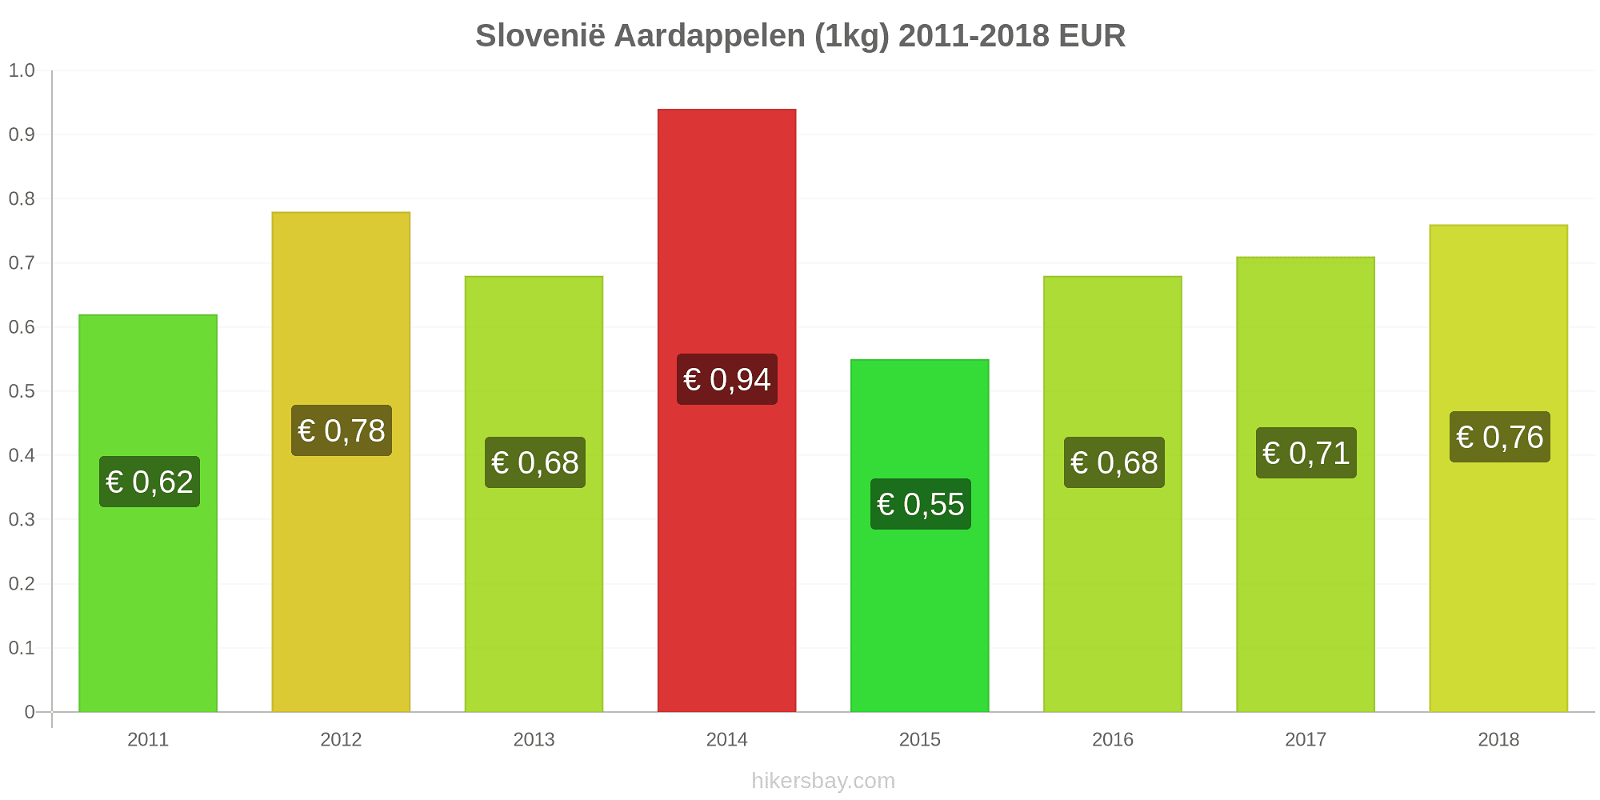 Slovenië prijswijzigingen Aardappelen (1kg) hikersbay.com